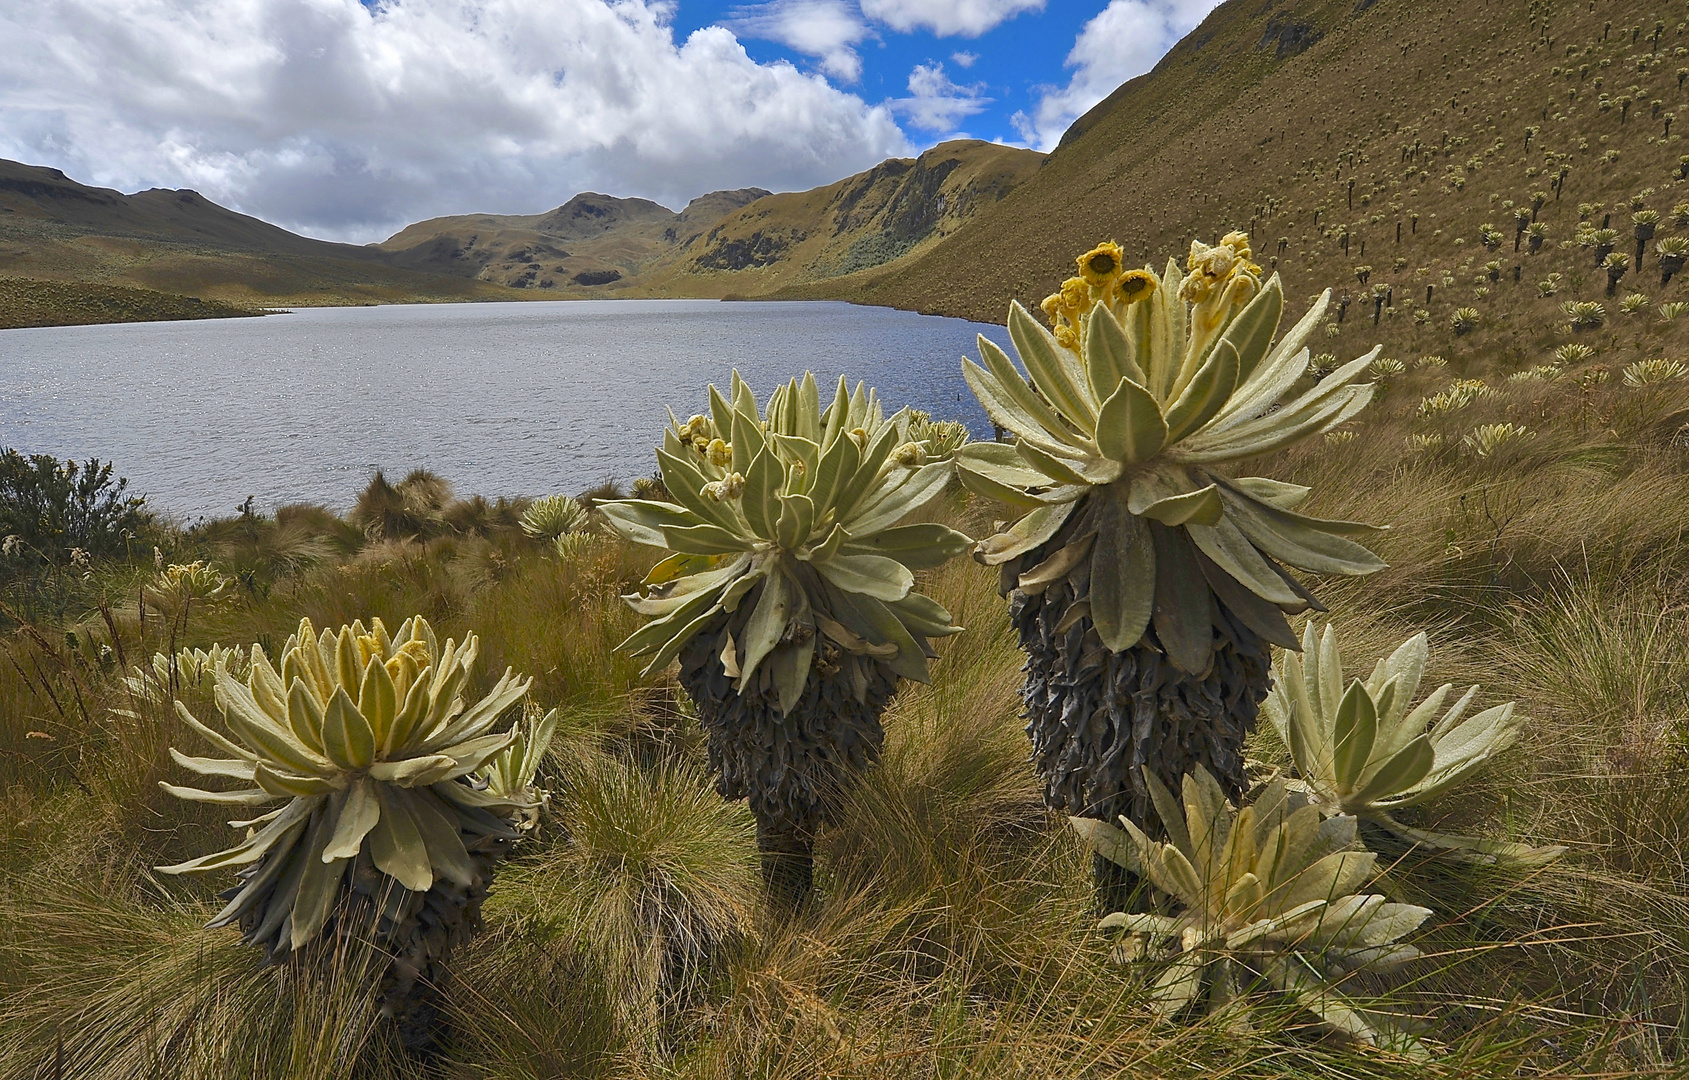 Anden-Landschaft mit Frailejonas im Norden von Ecuador